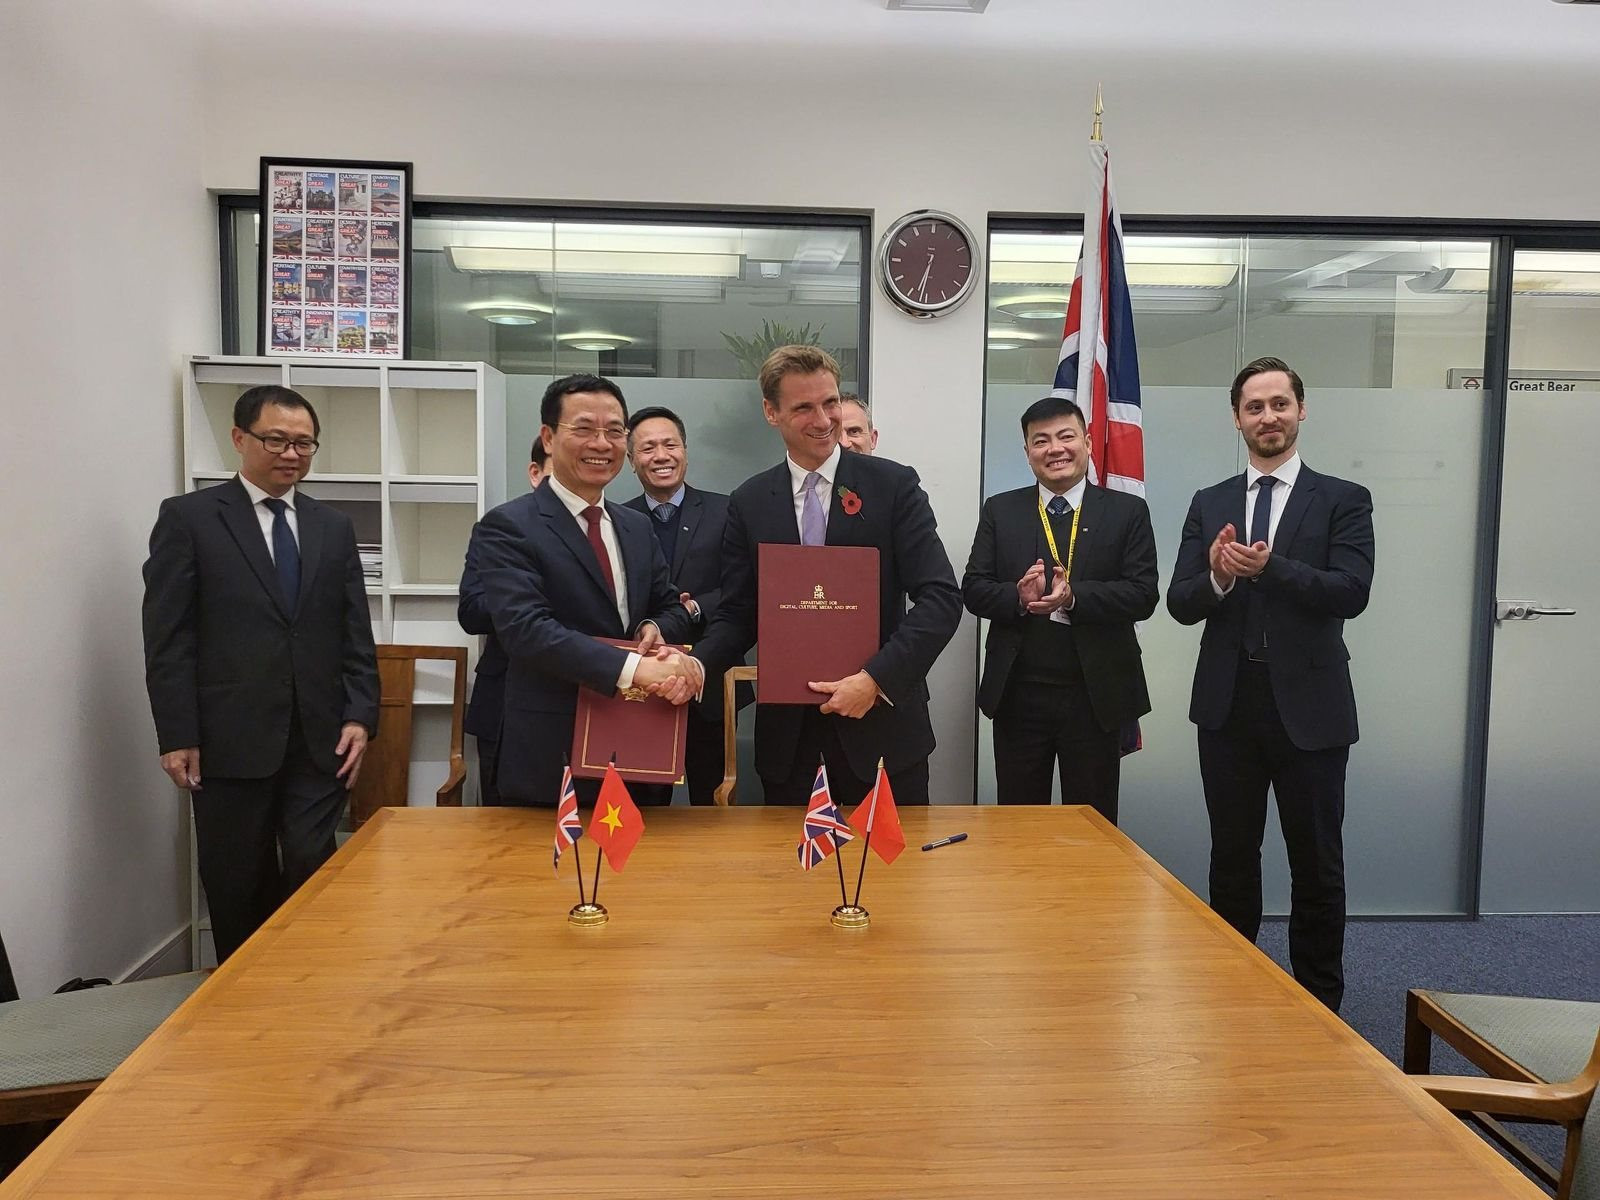 Việt Nam và Anh tăng cường hợp tác kinh tế số và chuyển đổi số